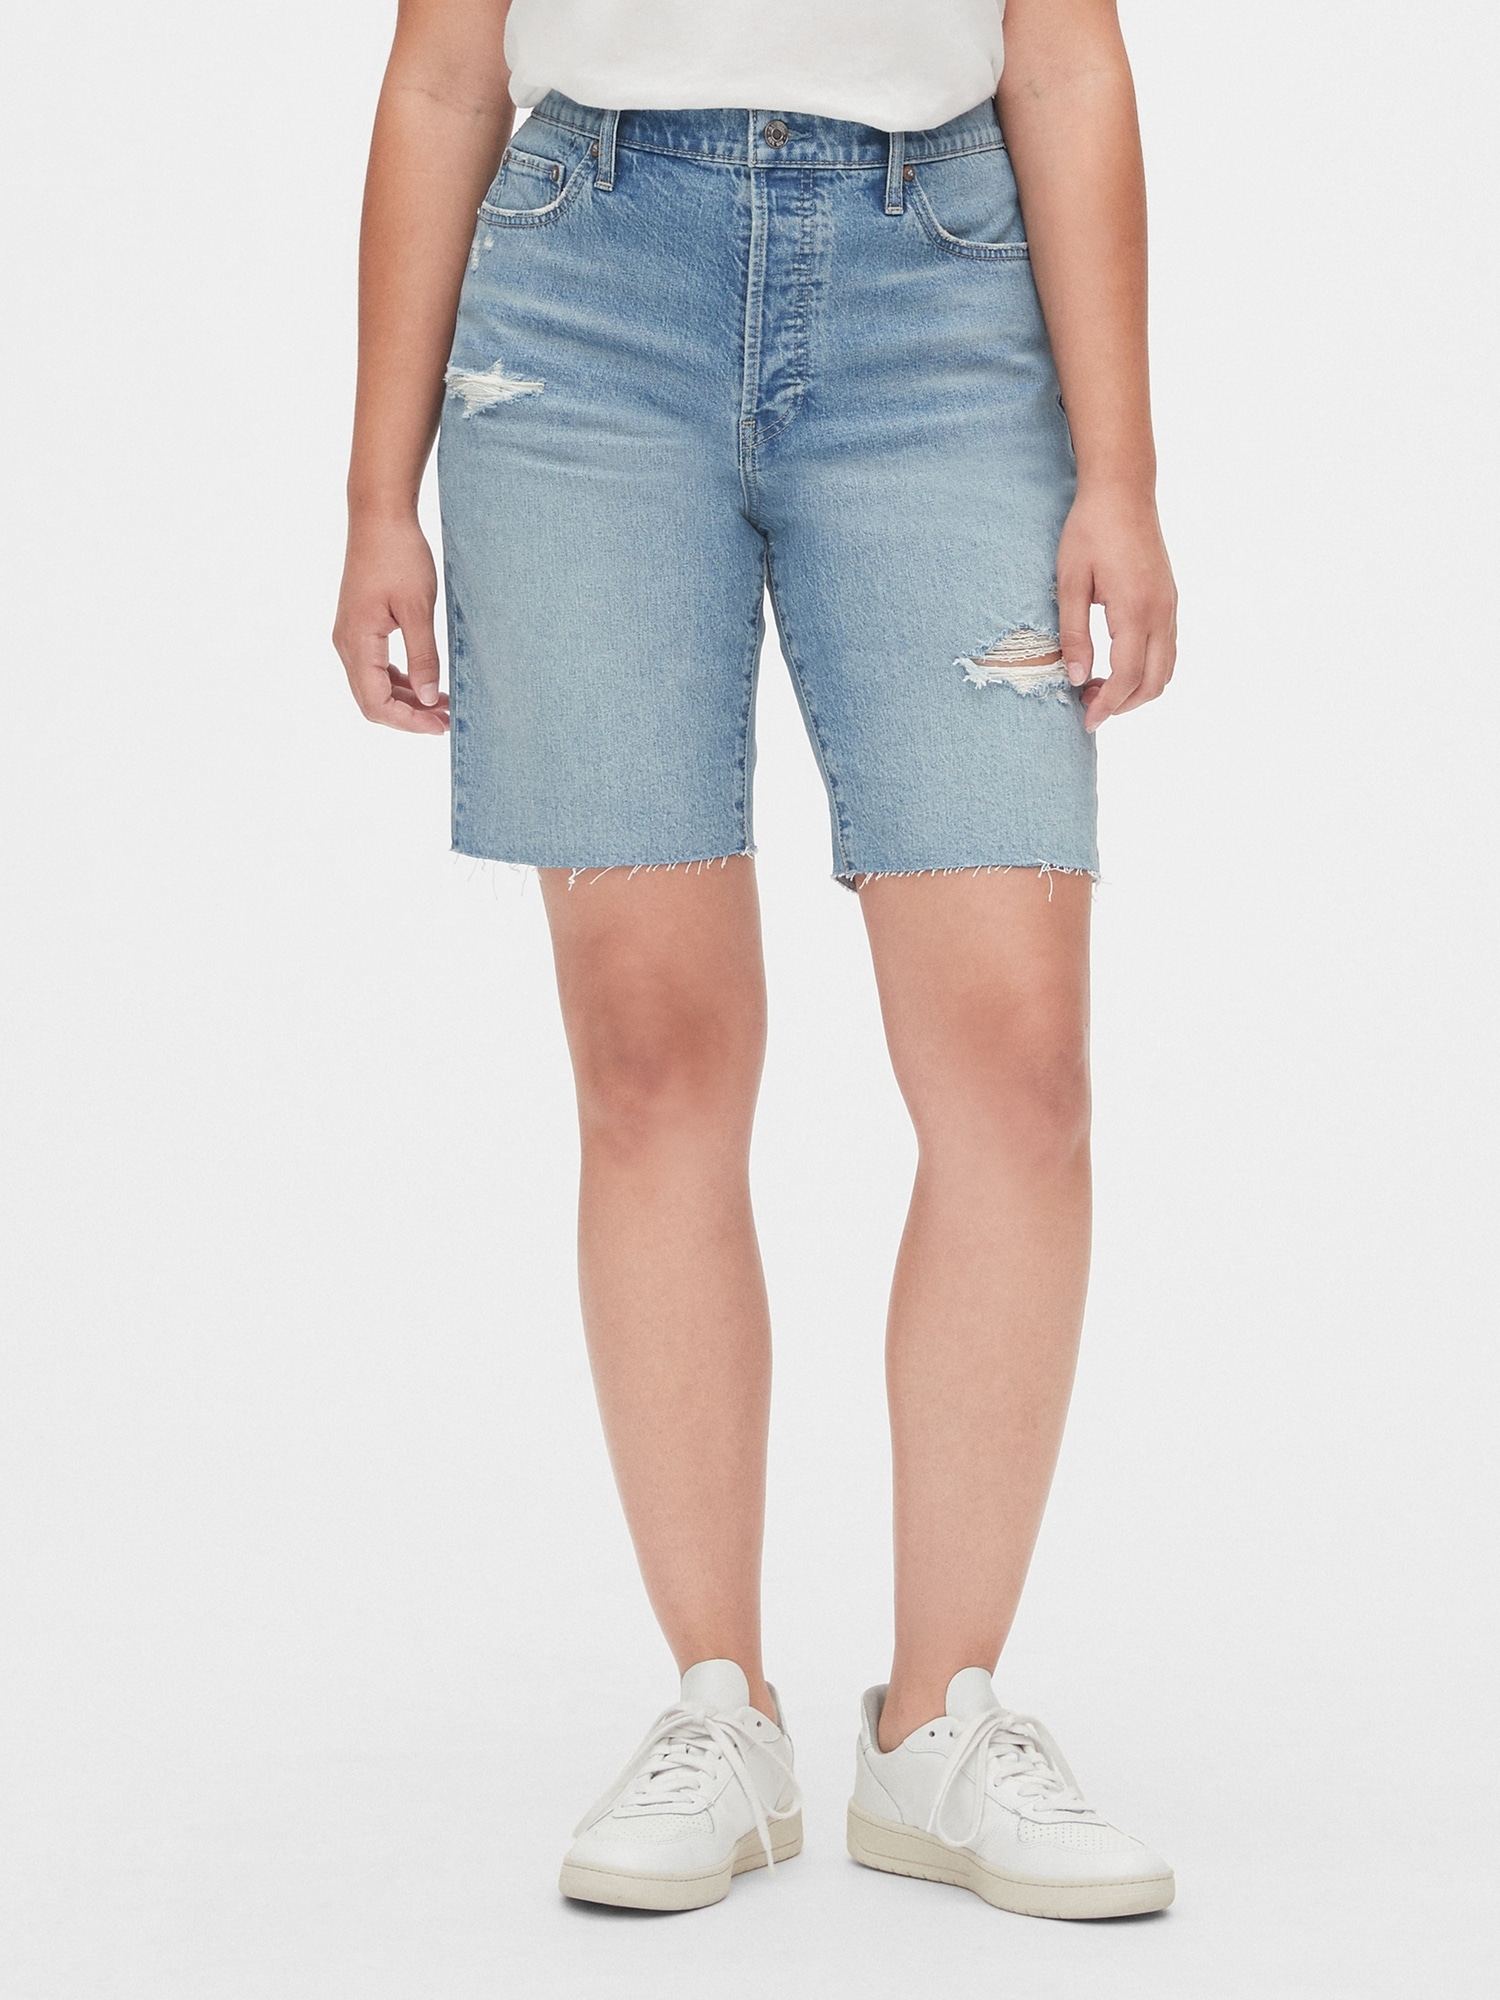 gap denim shorts womens